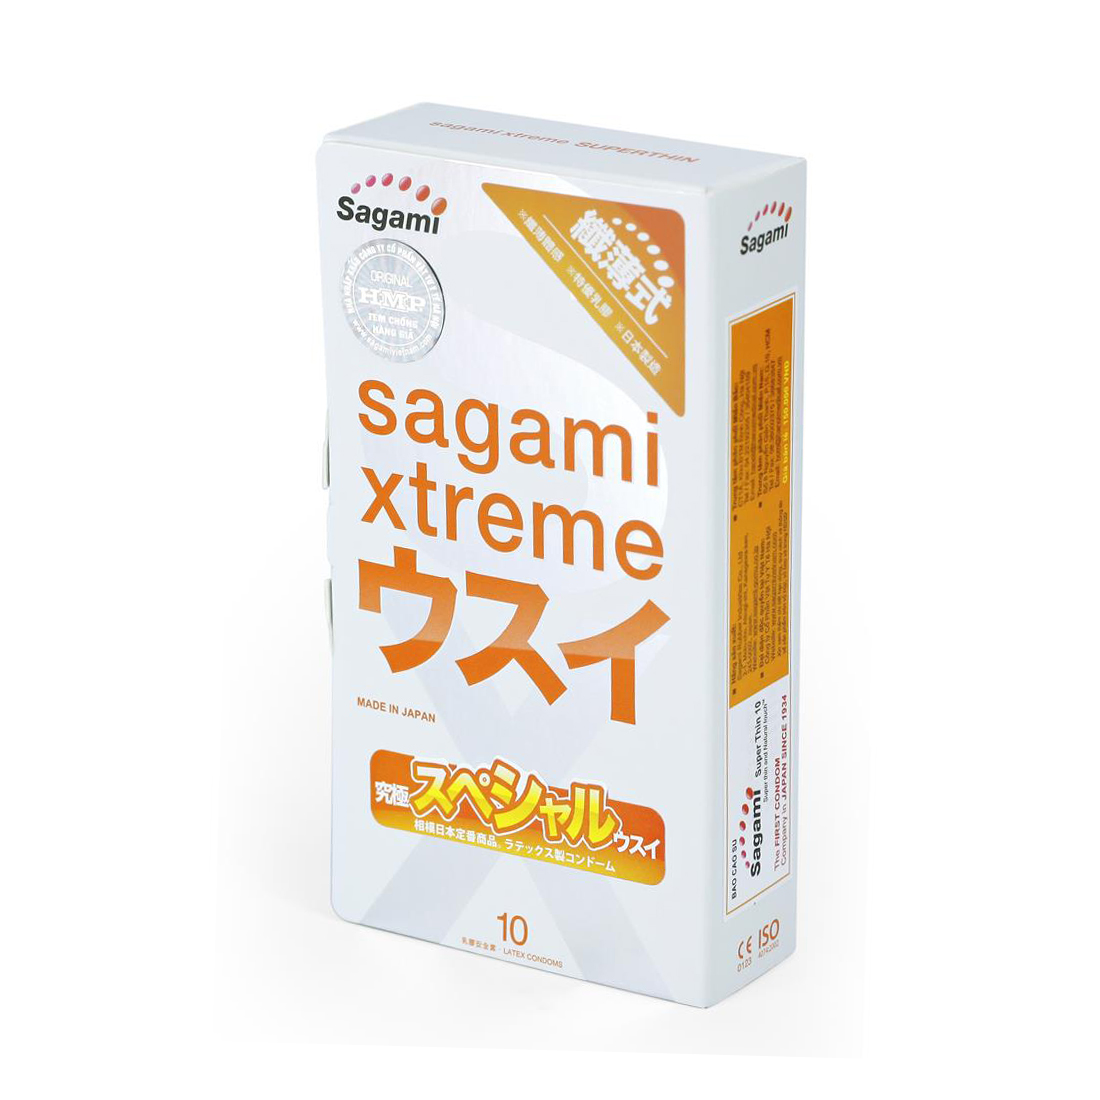 Bao cao su Sagami Xtreme Super Thin siêu mỏng, Hộp 10 cái